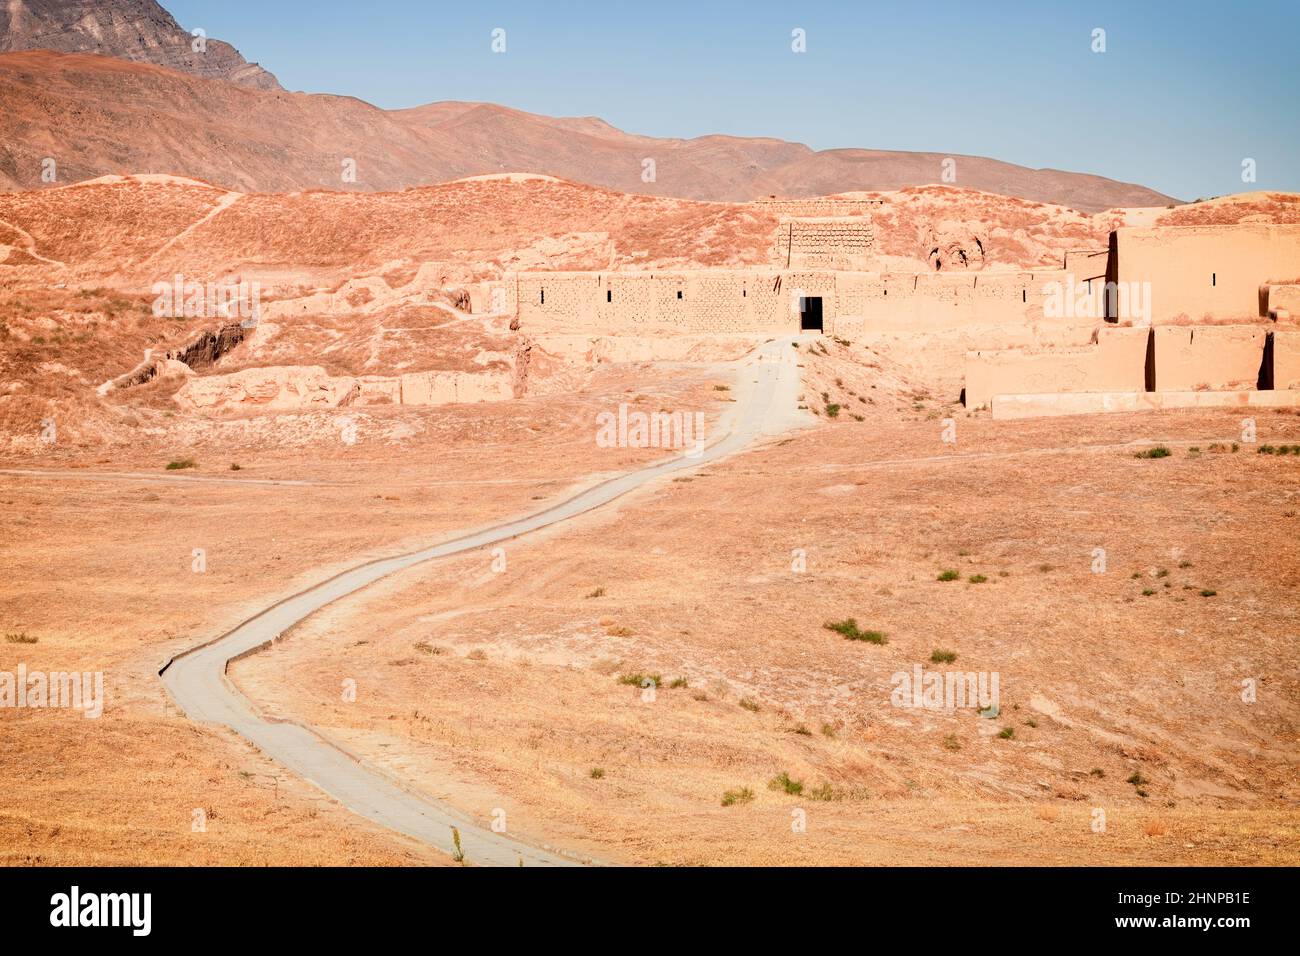 Ruines de l'ancienne capitale parthienne (Iran) NISA situé sur la route historique soyeuse dans le désert de Karakum, près de l'Ashgabat, Turkménistan Banque D'Images